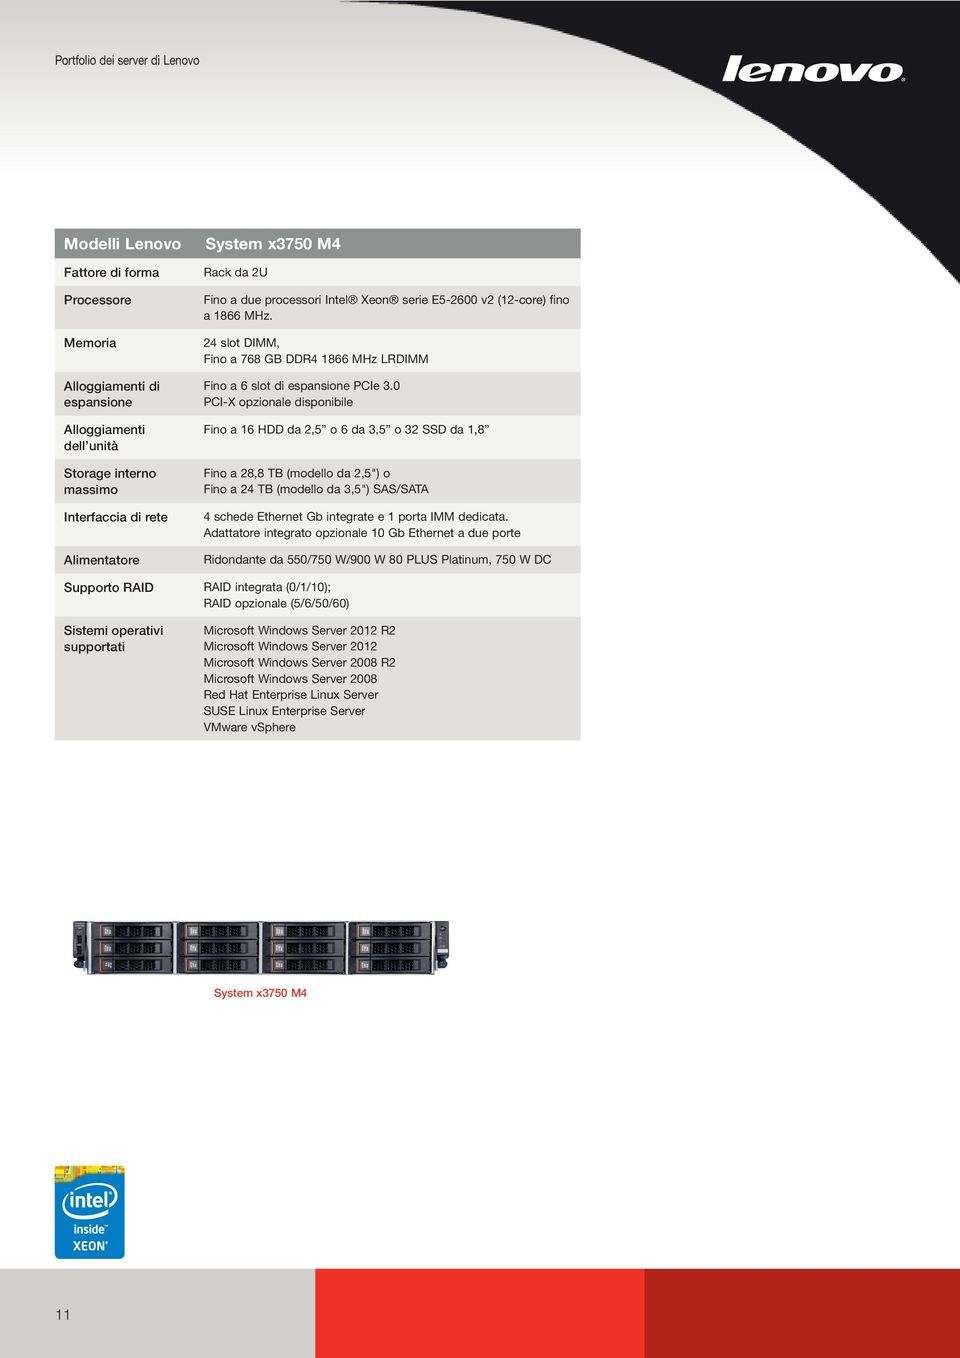 0 PCI-X opzionale disponibile Fino a 16 HDD da 2,5 o 6 da 3,5 o 32 SSD da 1,8 Fino a 28,8 TB (modello da 2,5") o Fino a 24 TB (modello da 3,5") SAS/SATA 4 schede Ethernet Gb integrate